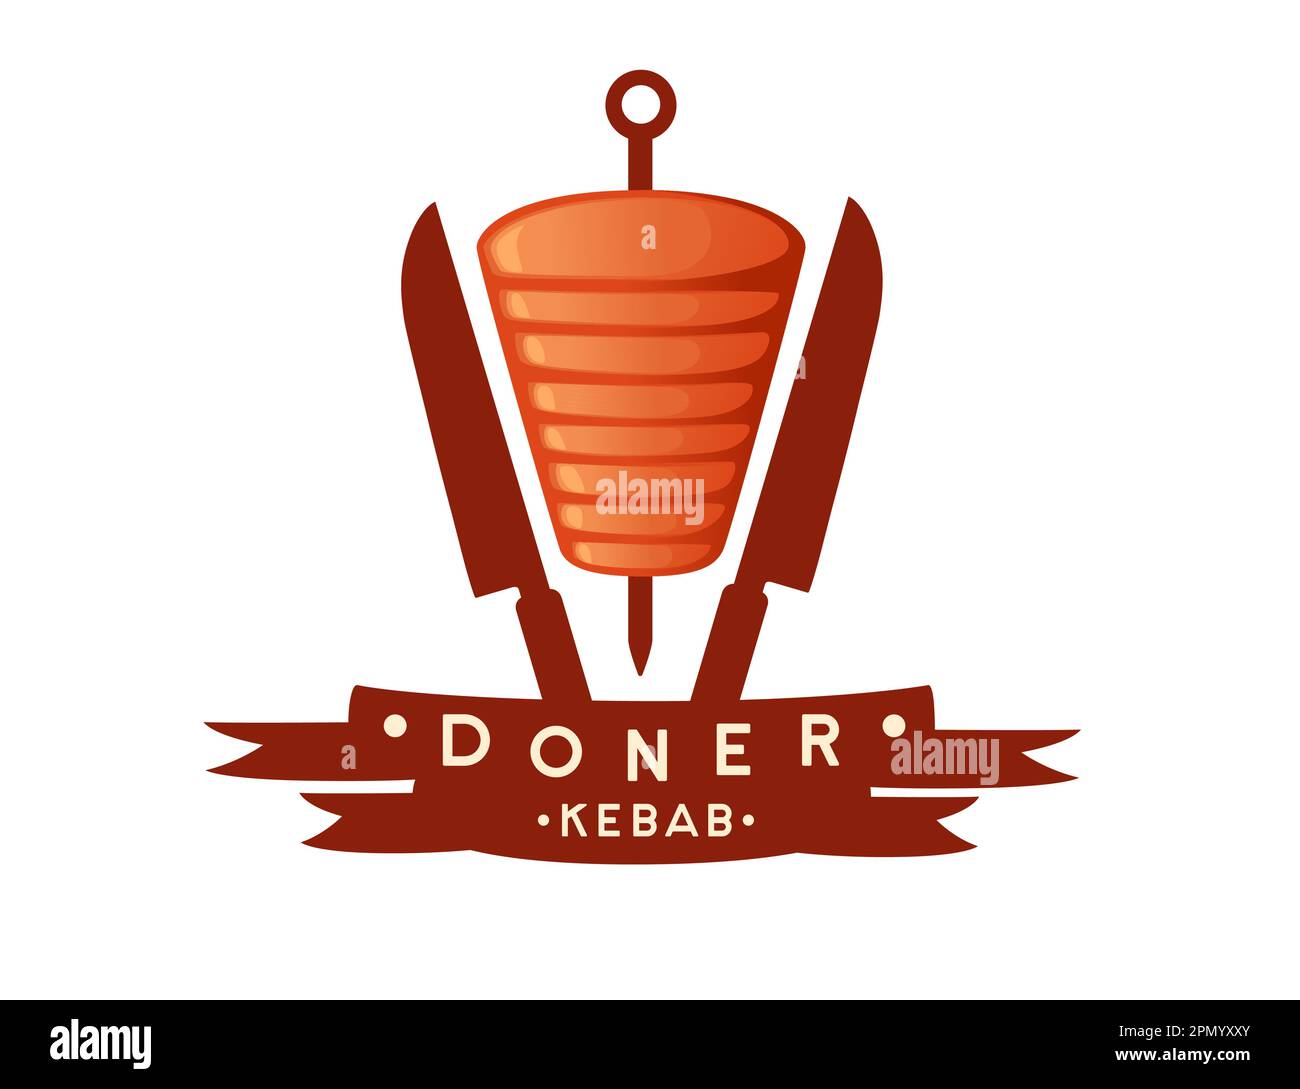 Kebab viande gril avec brochette et couteaux logo dessin vectoriel illustration sur fond blanc Illustration de Vecteur